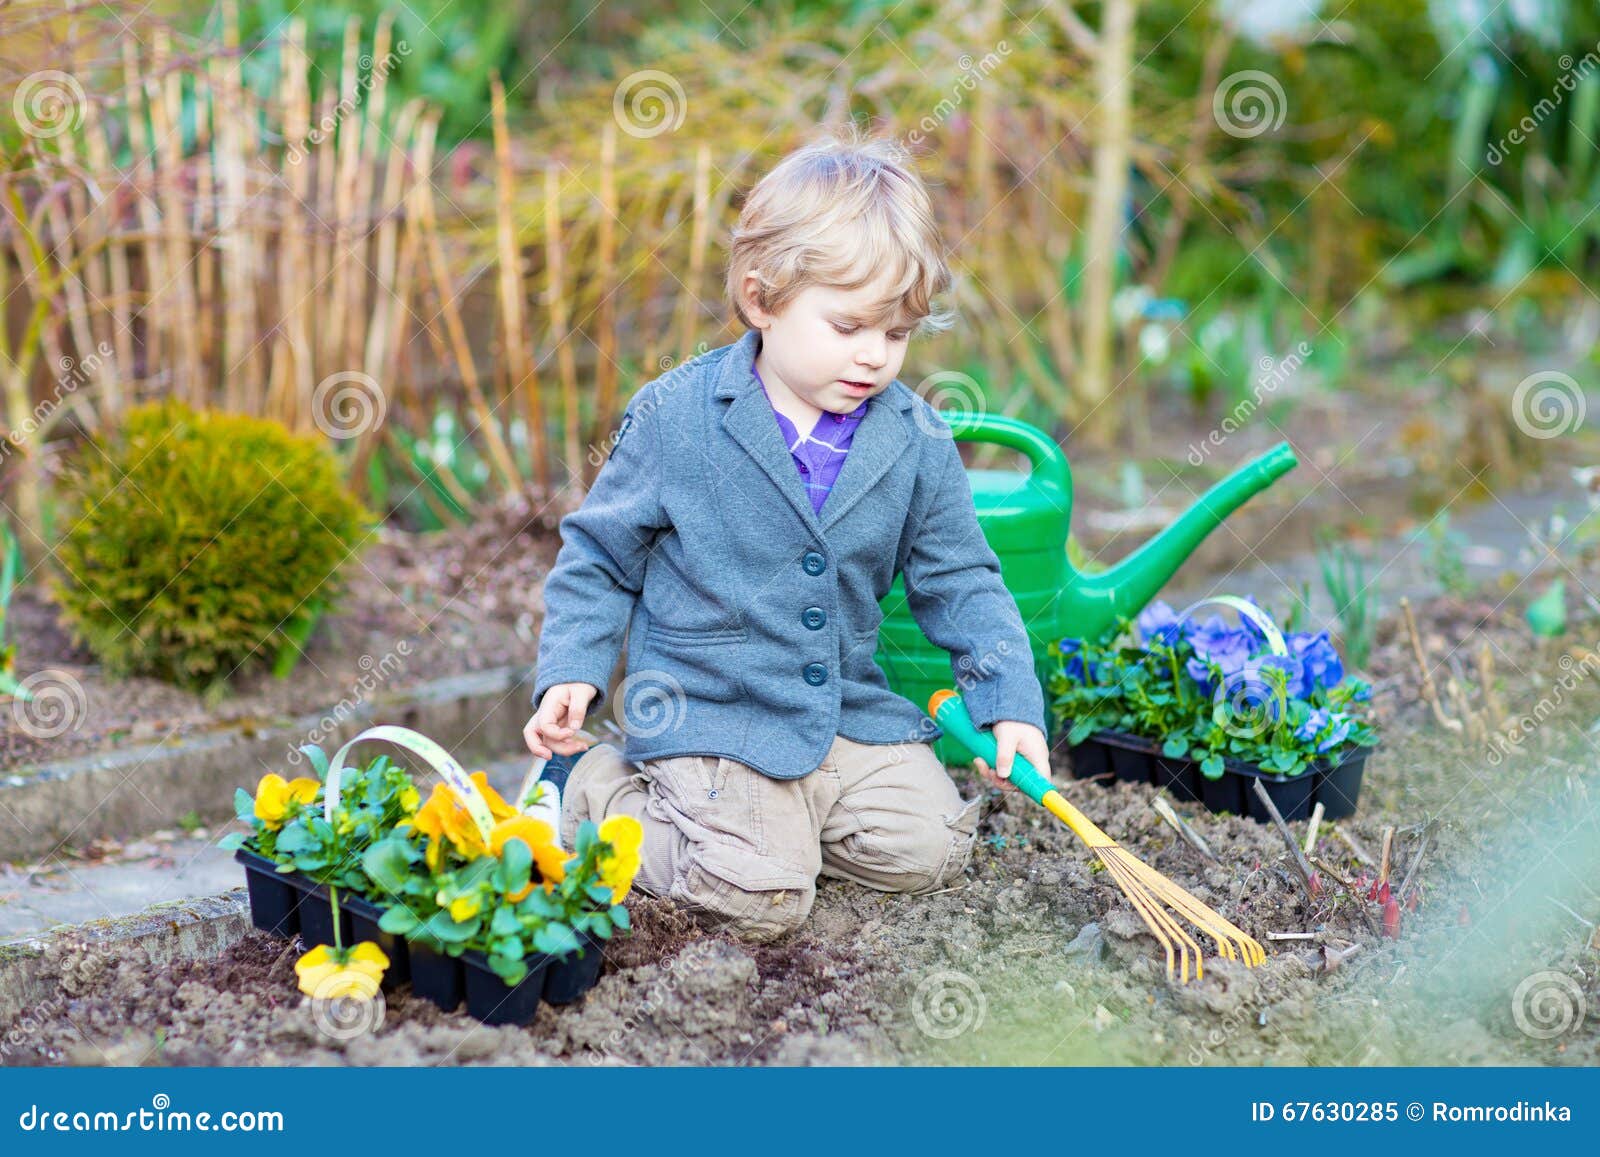 Когда можно садить мальчика. Мальчик в саду. Дети сажают цветы. Мальчик сажает цветы. Дети выращивают цветы.